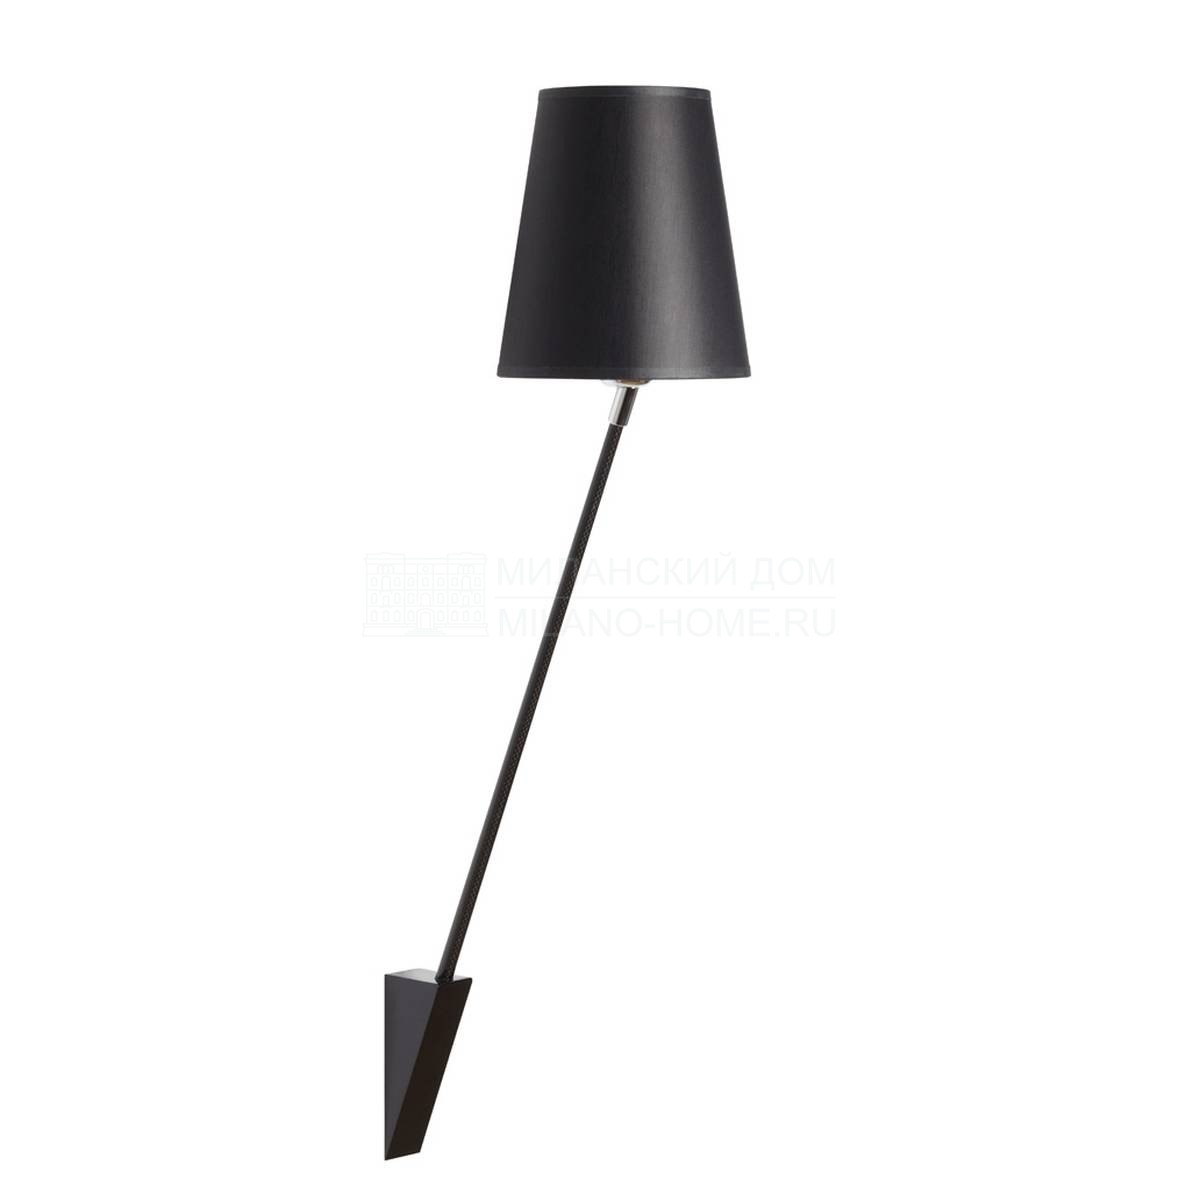 Бра Lord light wall lamp black shade из Франции фабрики FORESTIER